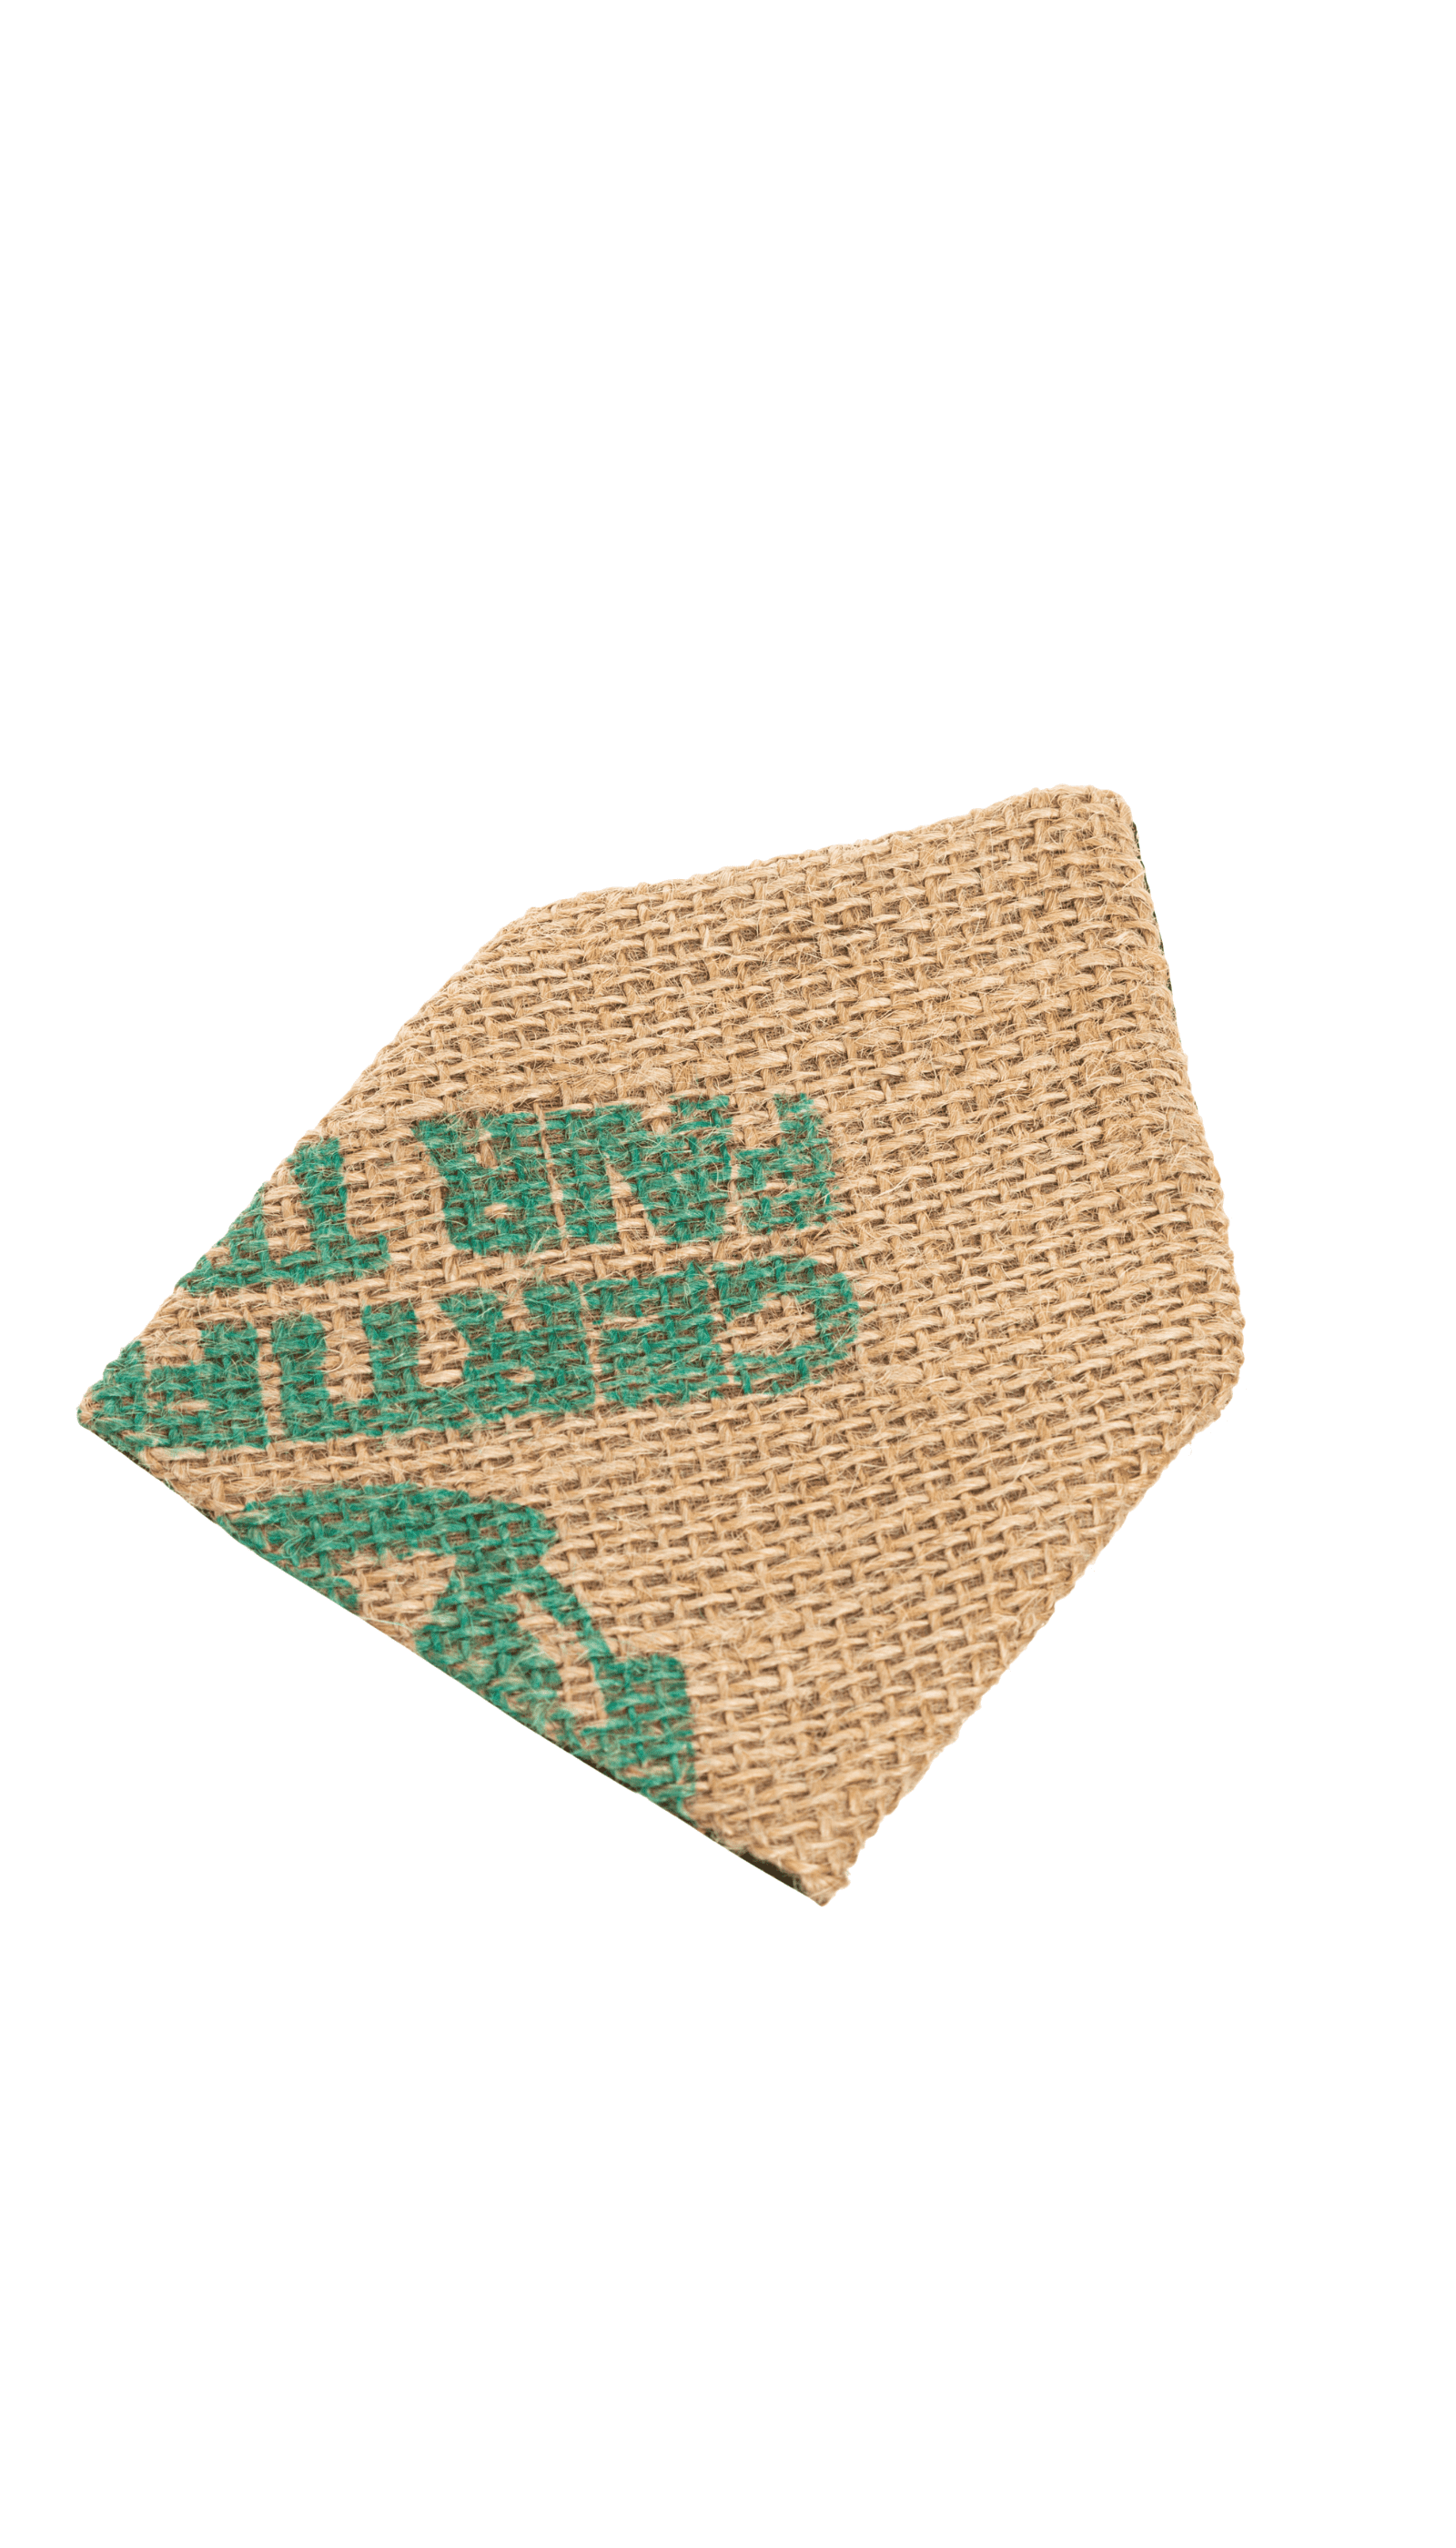 Pañuelo de bolsillo de saco de café reciclado hecho a mano - Moda sostenible